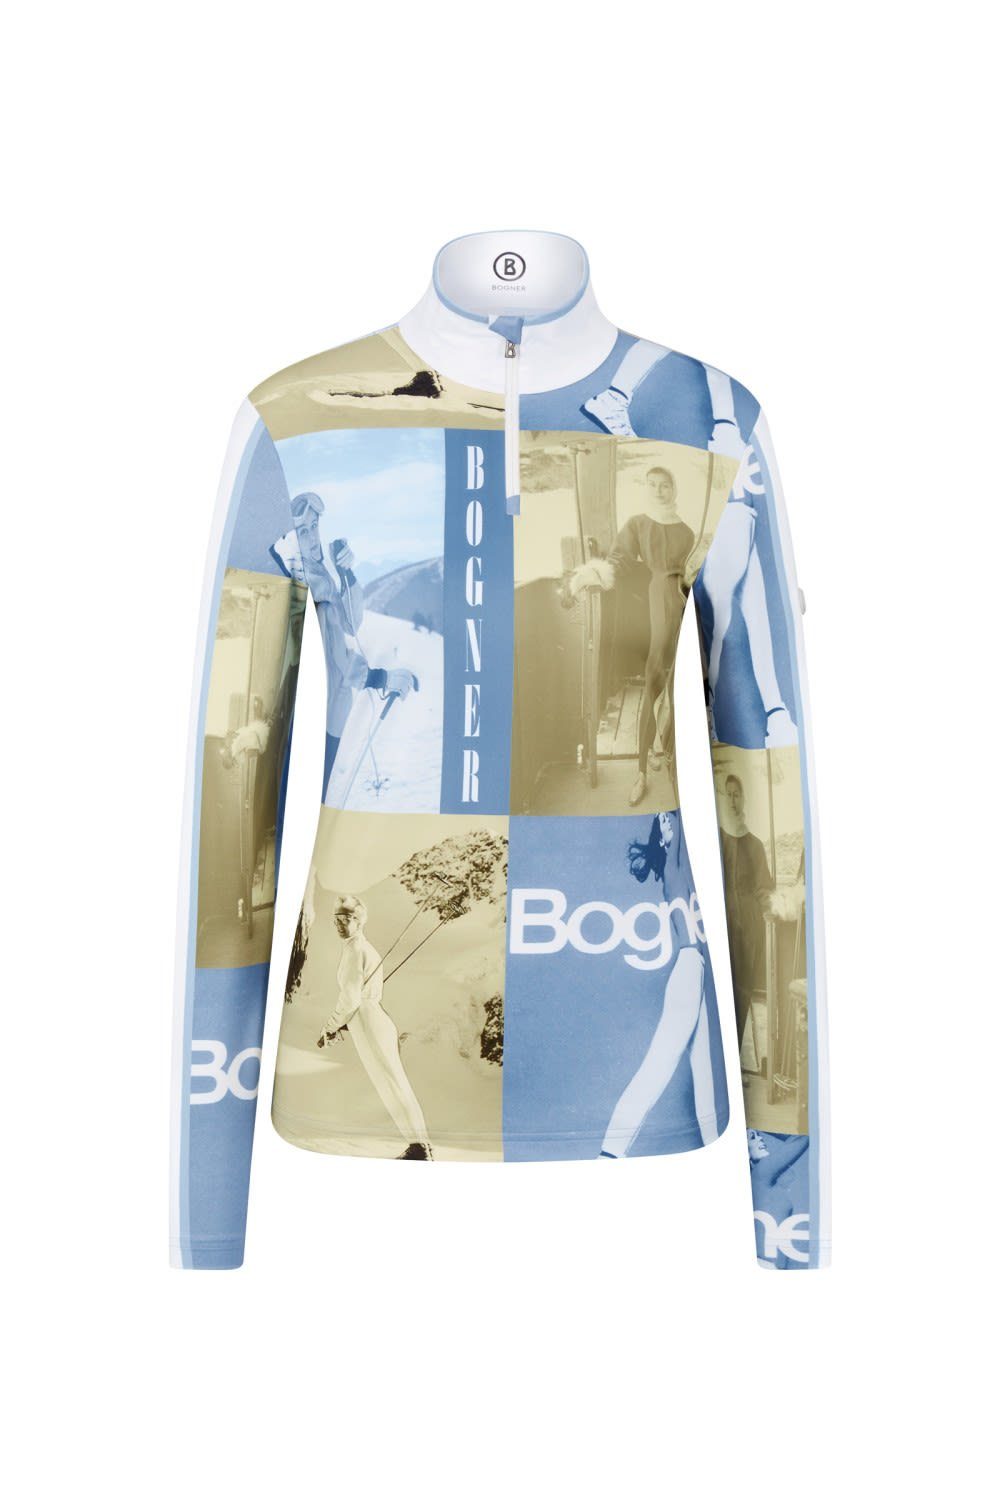 BOGNER Langarmshirt Bogner Sport Ladies Beline1 Damen Langarm-Shirt Multicolor - Blue